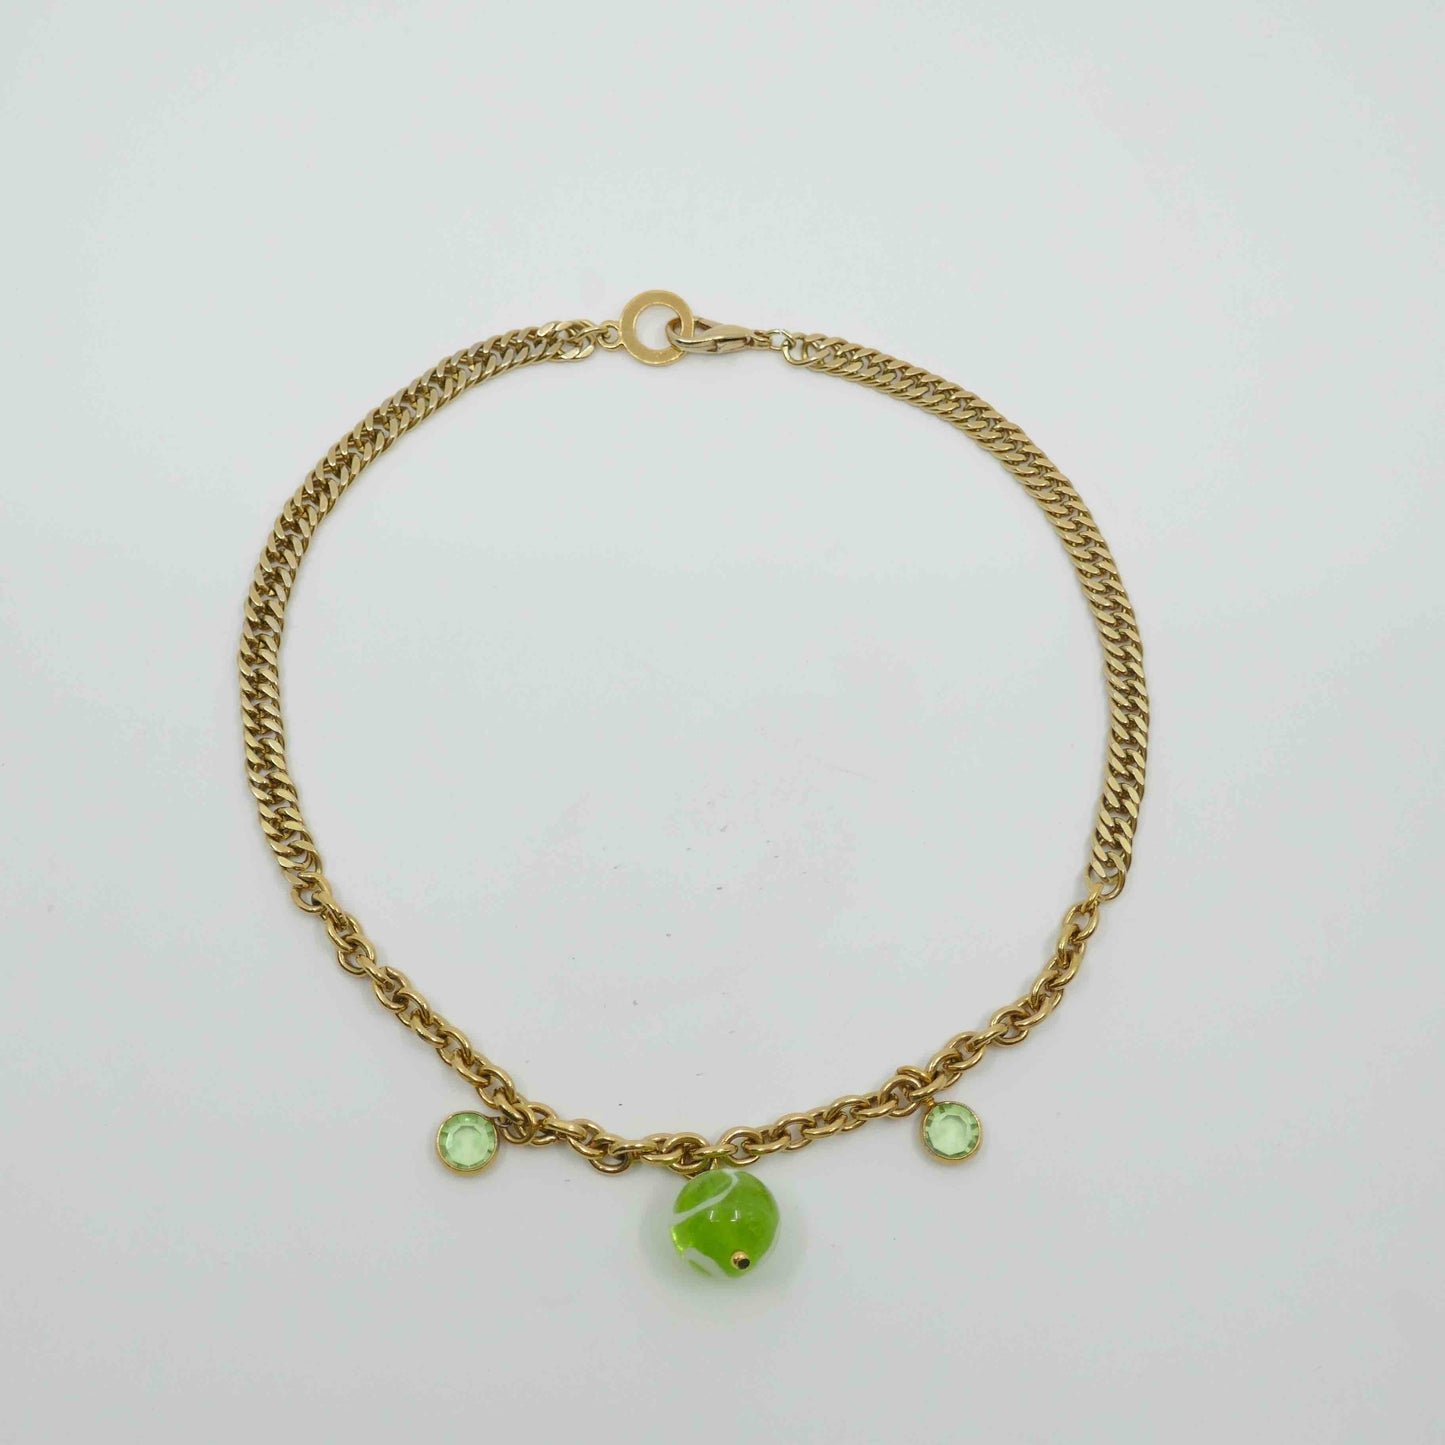 collier dore vent d ete-collier upcycle chaine vintage doree agatha pendentifs vert perles vertes photo en entier-atelierlabonneaventure